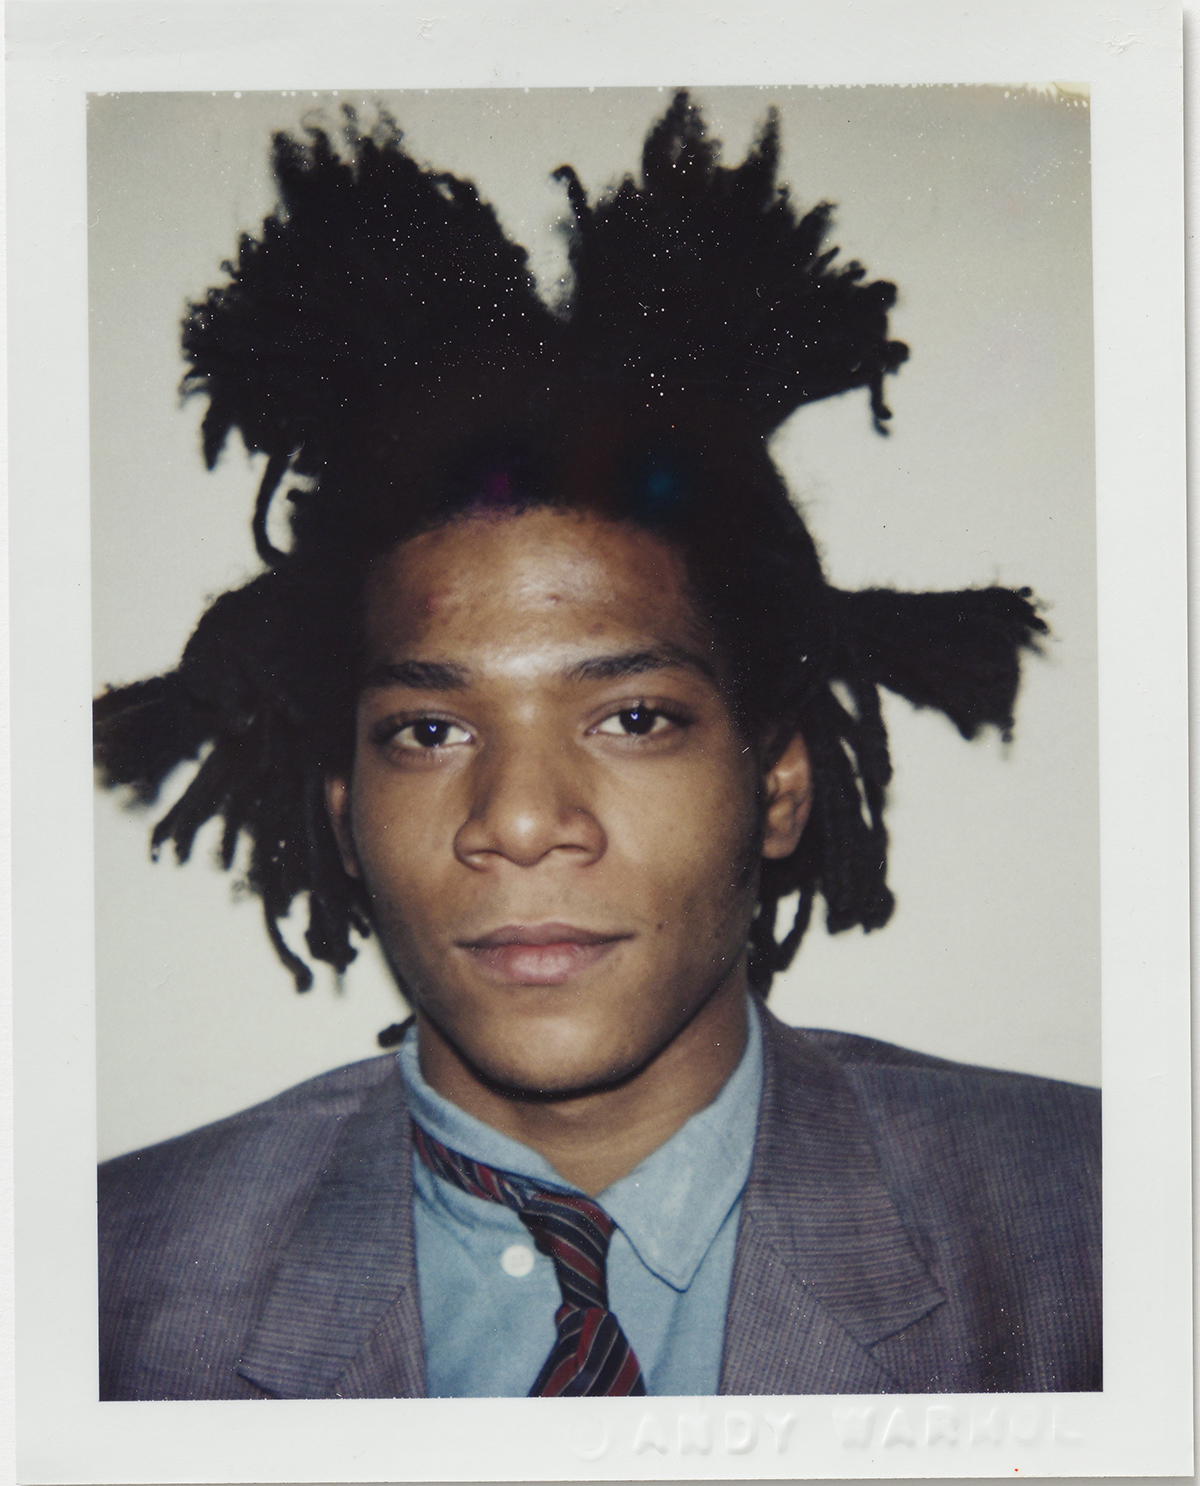 Portrait of artist Jean-Michel Basquiat by Andy Warhol